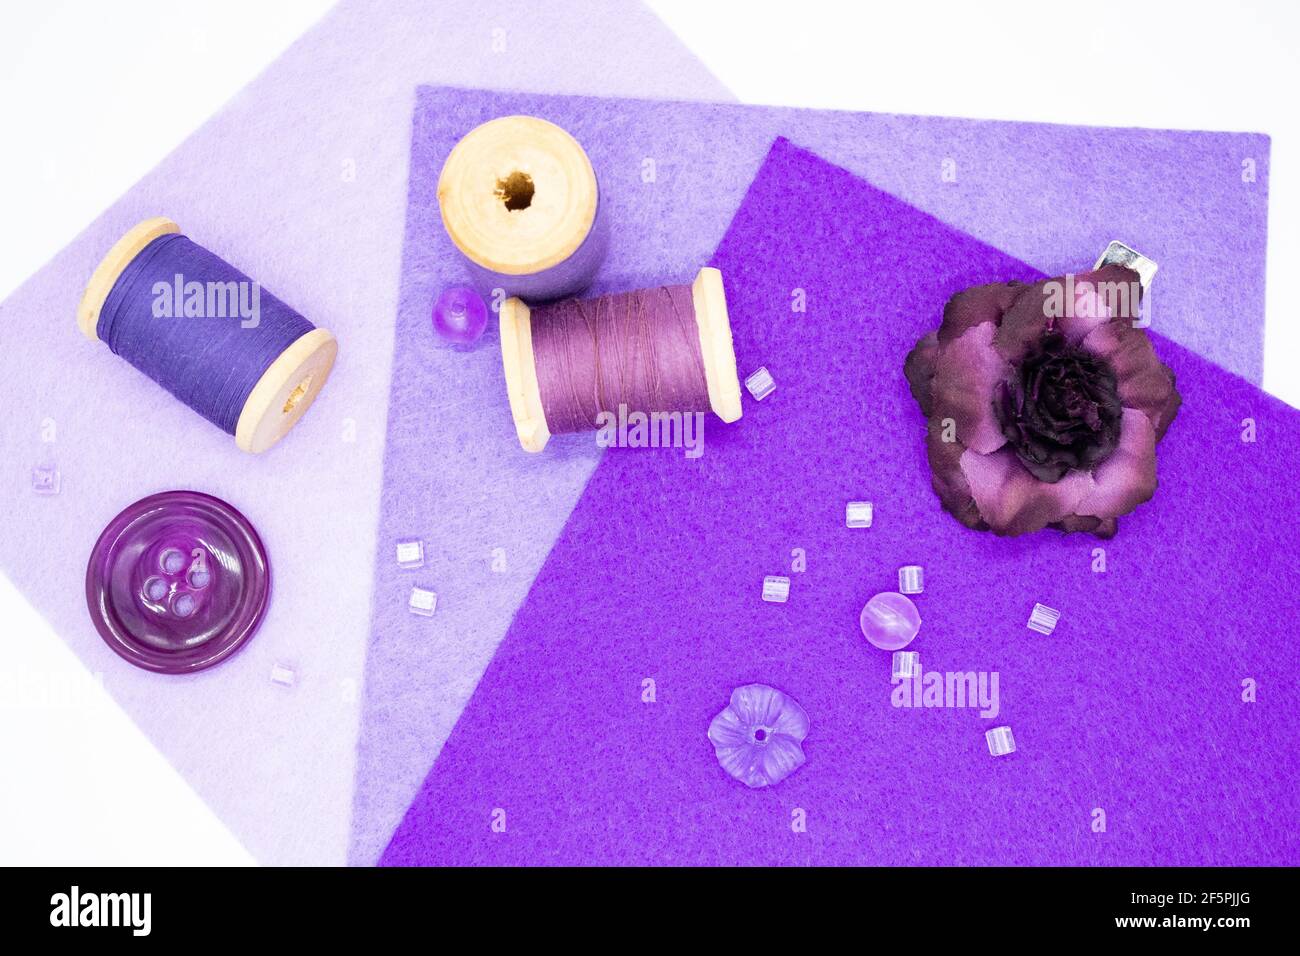 Articles de couture pourpres : feutre dans trois nuances de lilas, bobines en bois avec fil, perles, boutons, et une rose pourpre. Banque D'Images